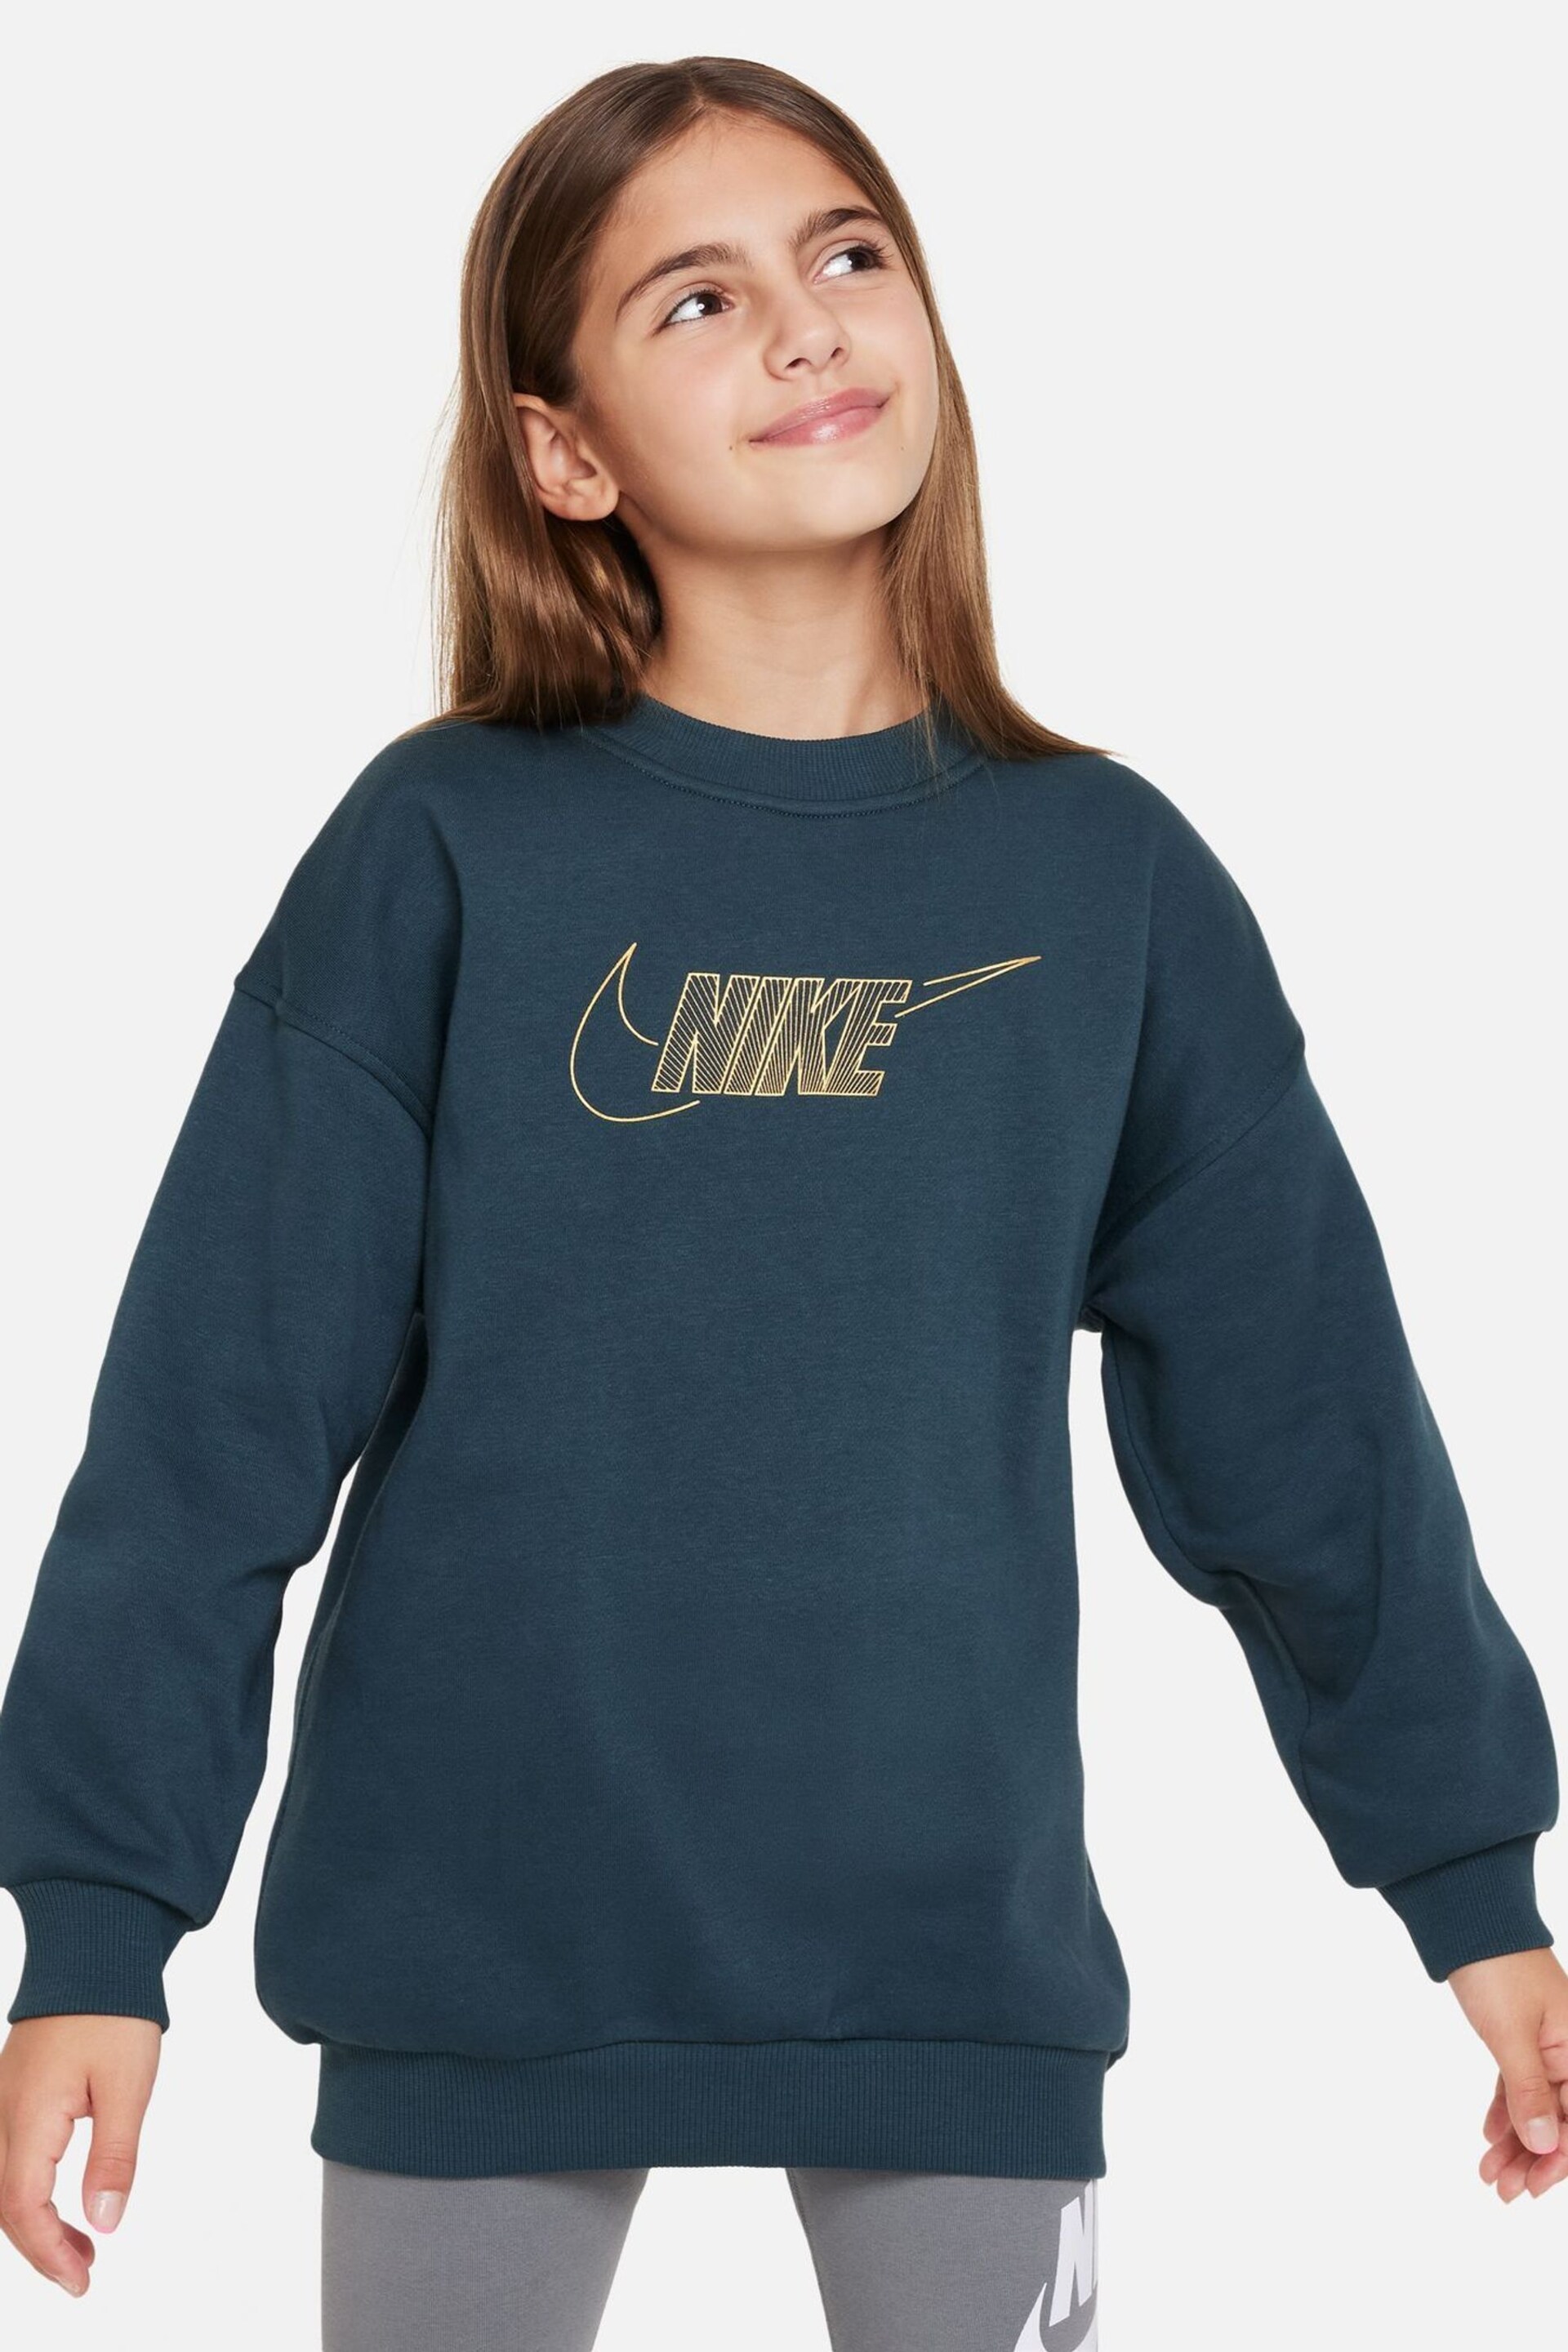 Nike Green Oversized Shine Fleece Sweatshirt - Image 1 of 4